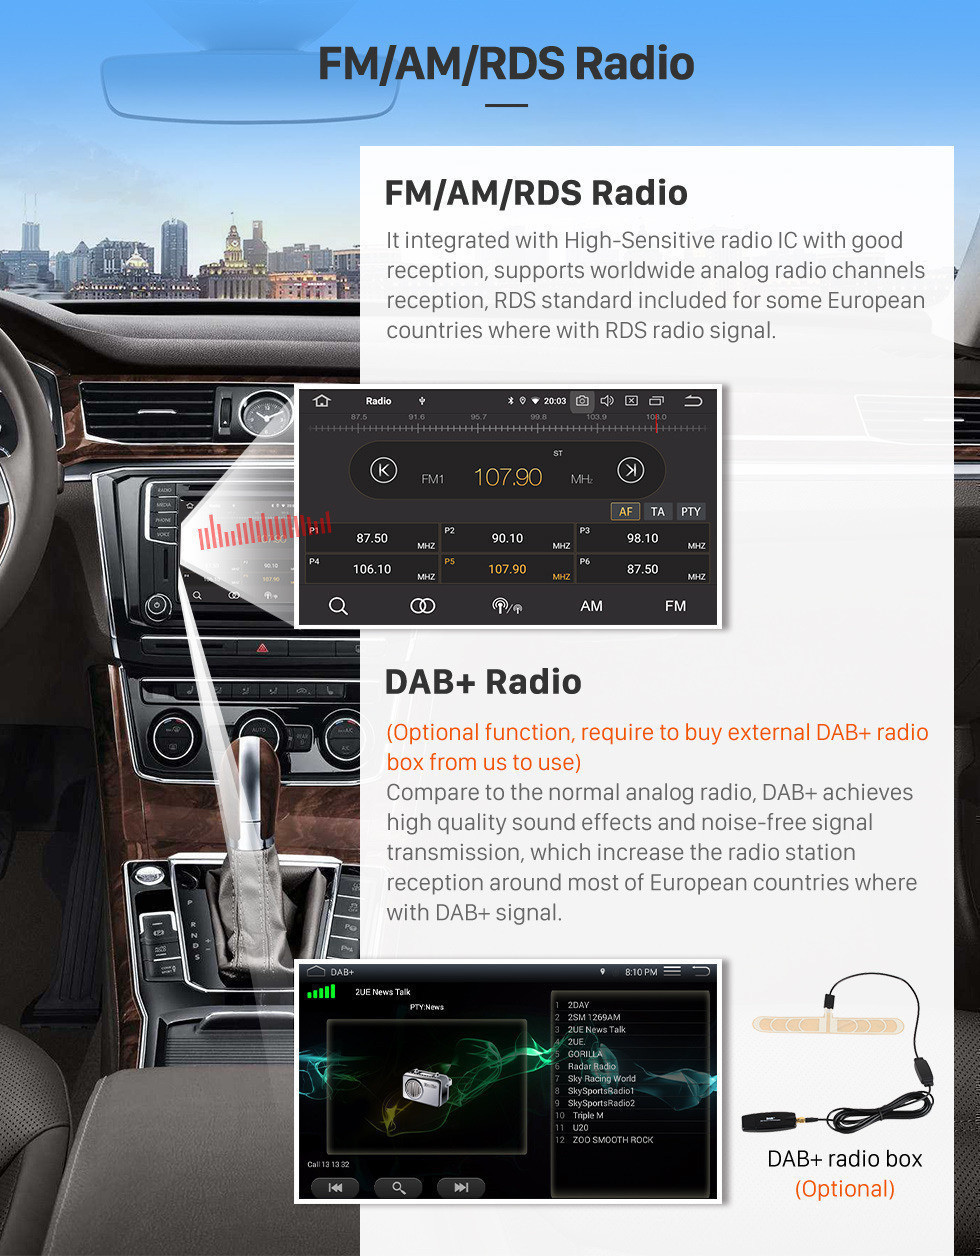 Seicane Rádio de reposição de 9 polegadas android 12.0 para 2000-2015 vw volkswagen crafter para leitor de dvd bluetooth música sistema de navegação gps estéreo do carro wi-fi espelho link hd 1080 p vídeo